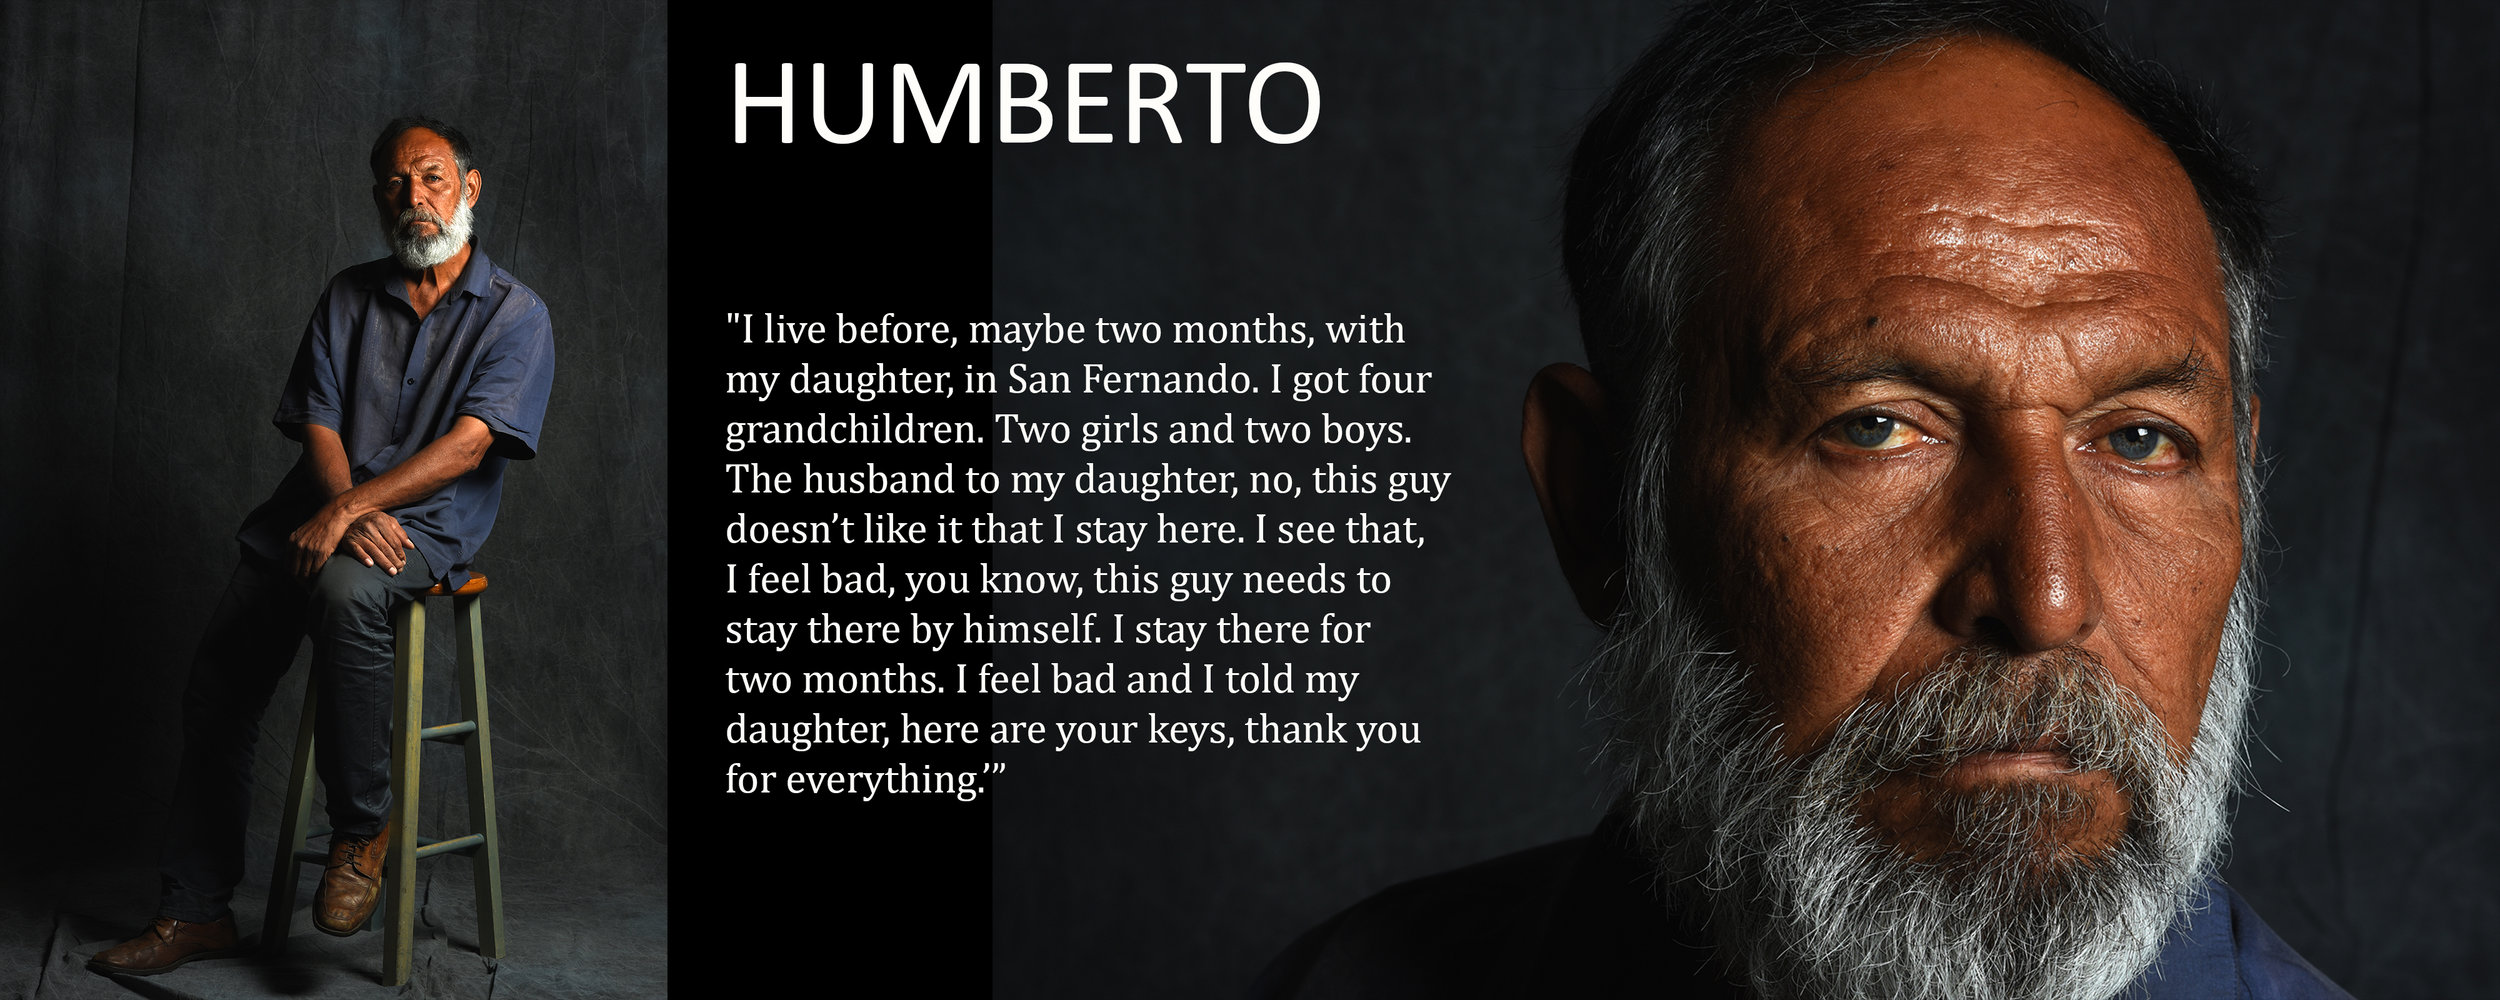   Humberto interview  